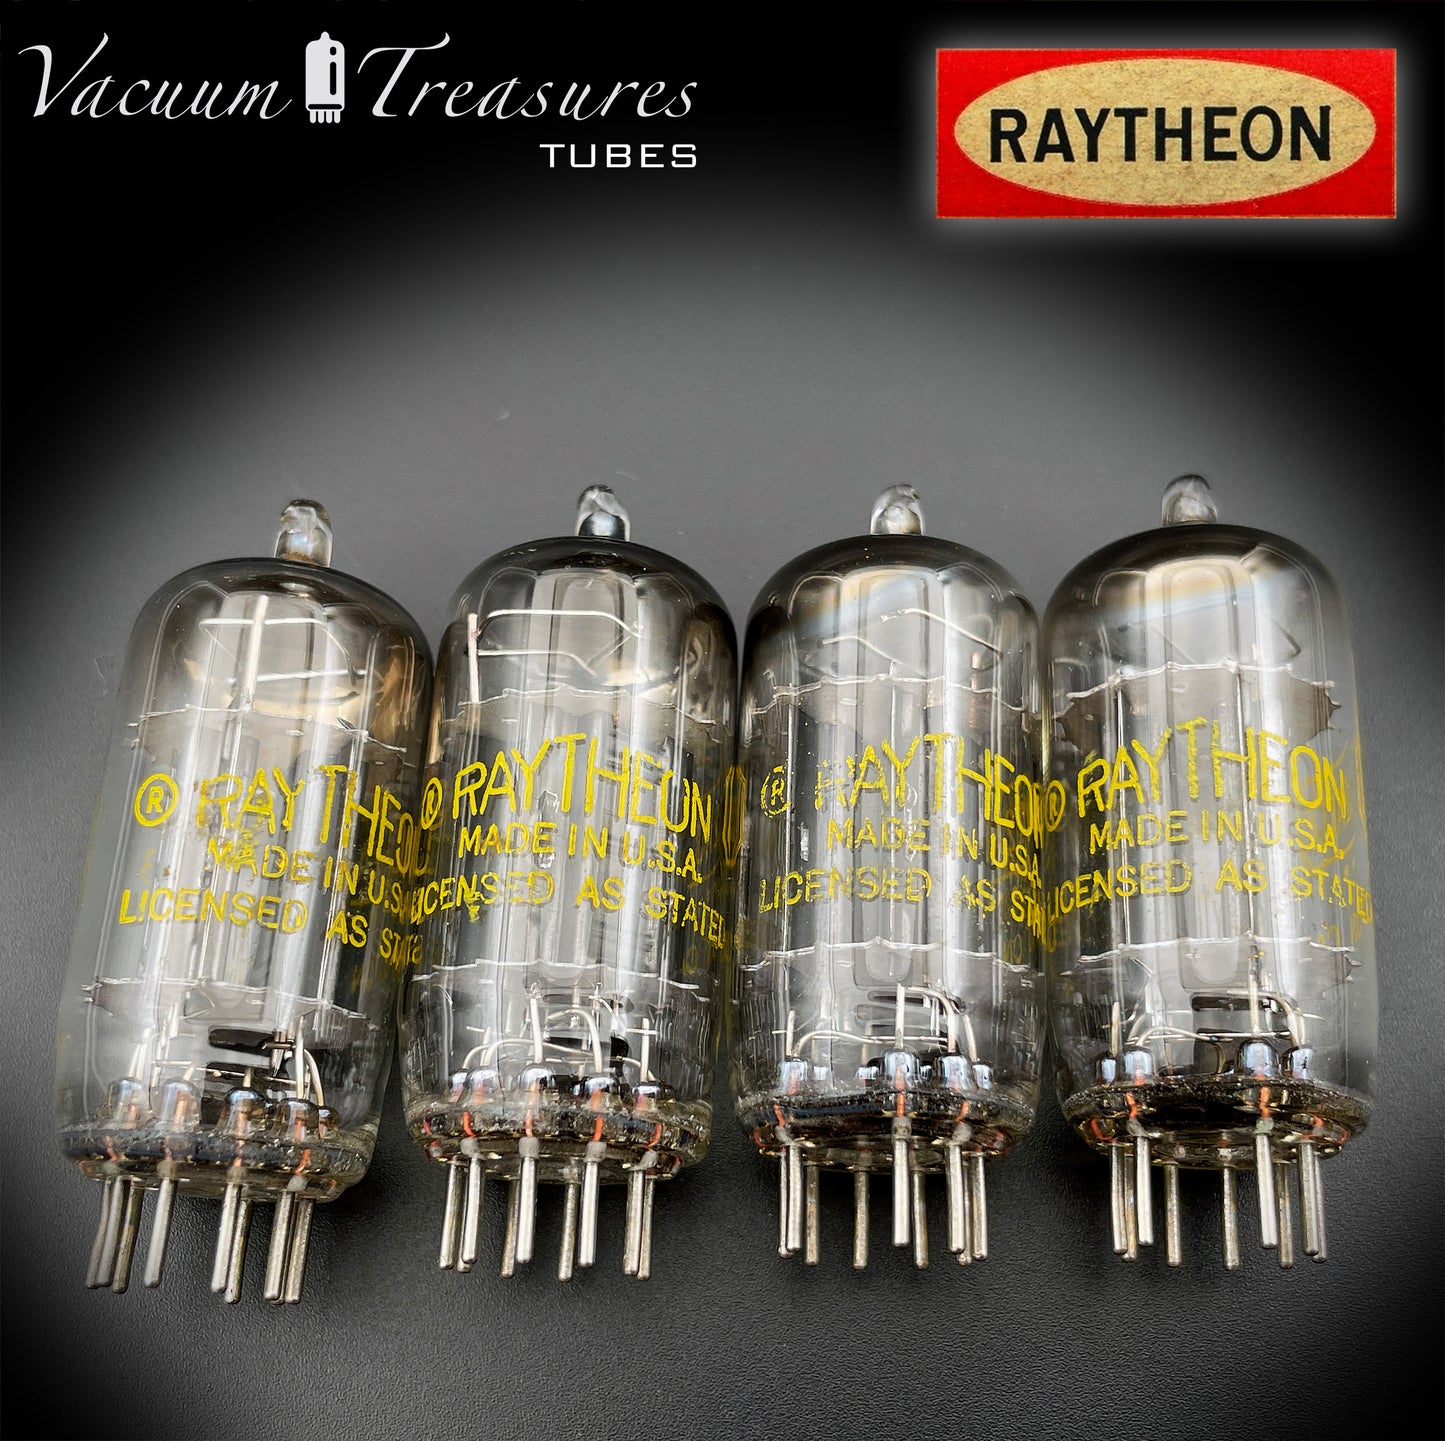 12AU7 (ECC82) RAYTHEON longues plaques noires carré Getter tubes assortis fabriqués aux États-Unis '58